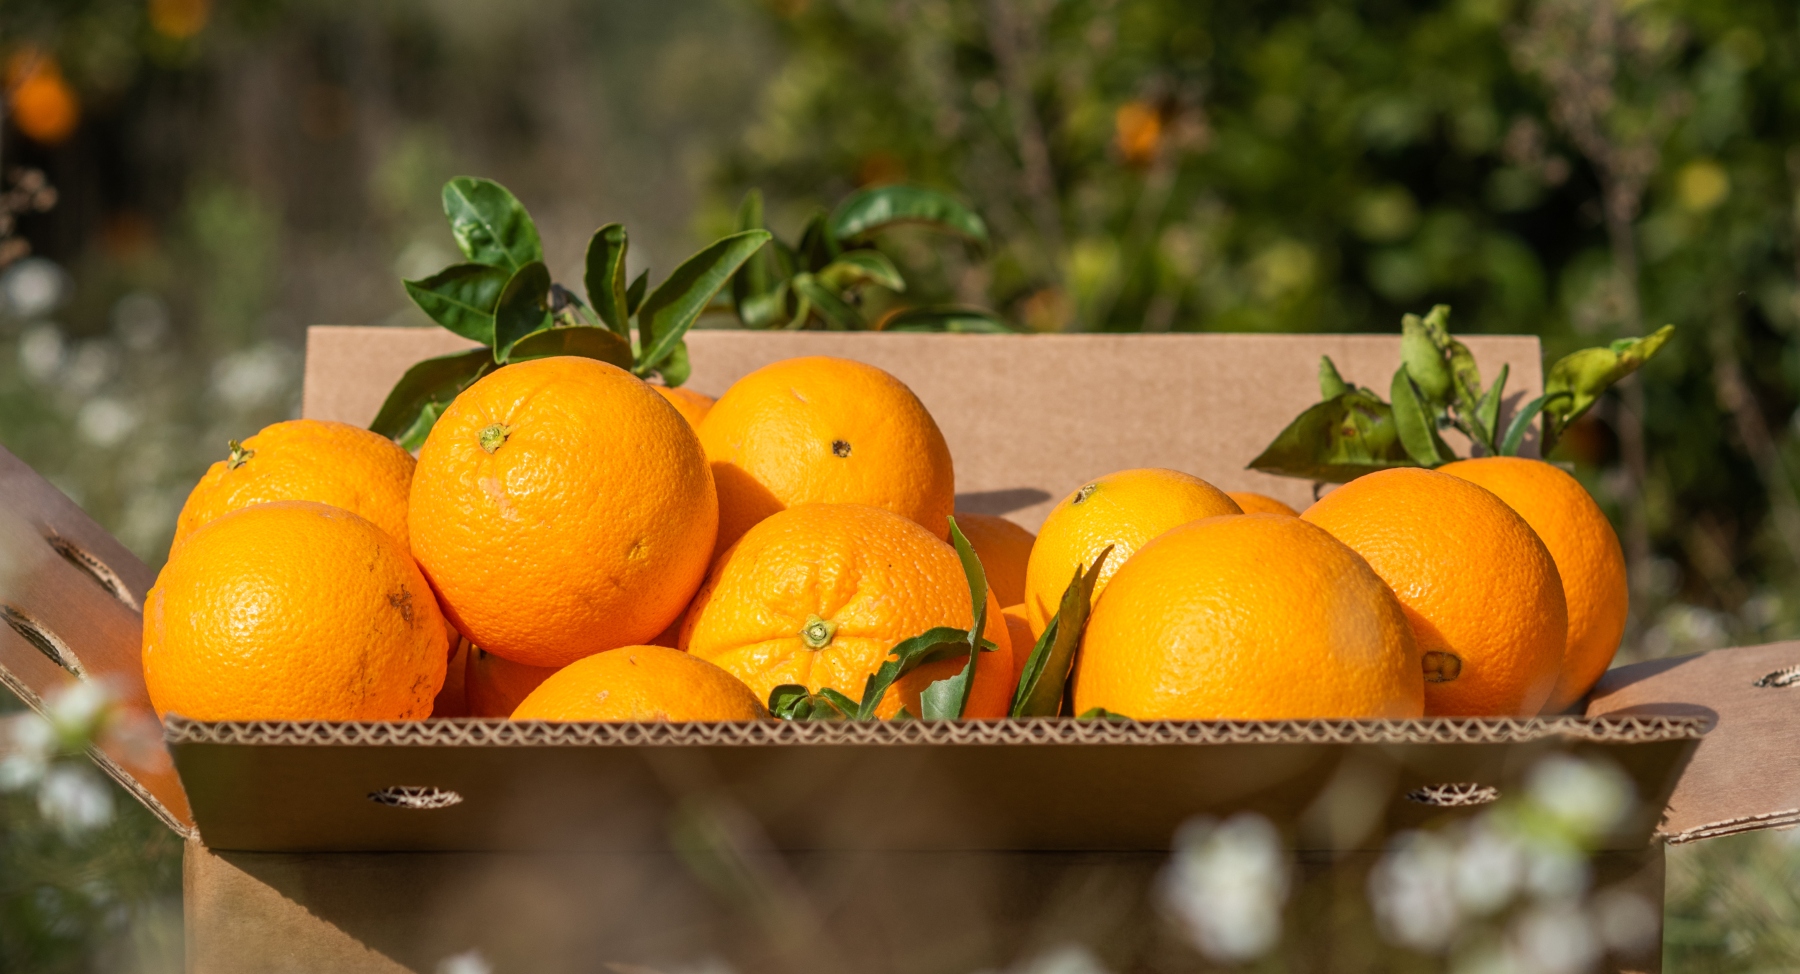 Des oranges bio dans une caisse en carton